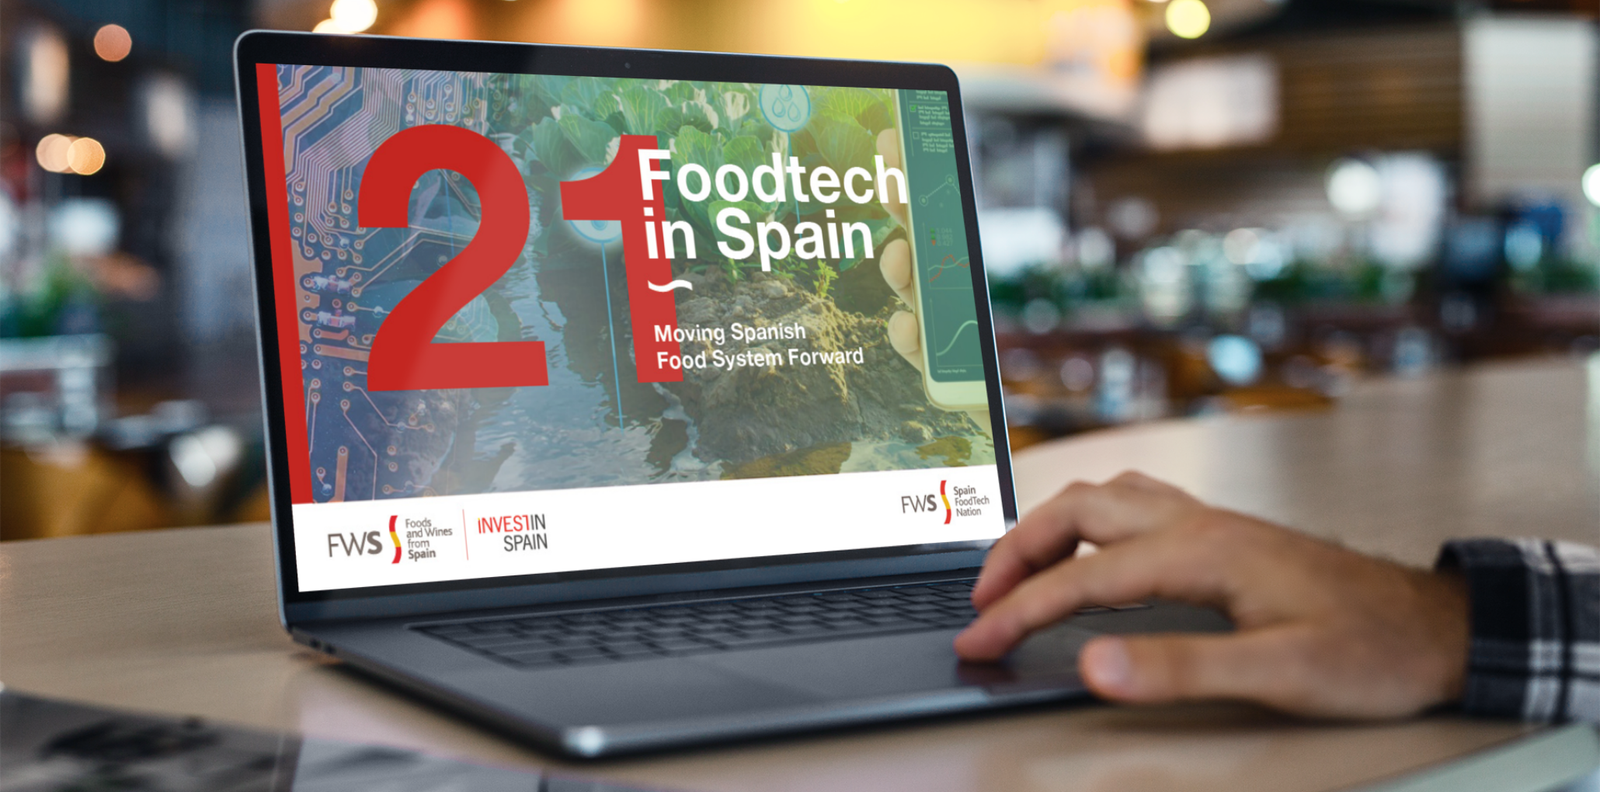 Agentes gubernamentales dan apoyo integral al ecosistema FoodTech español